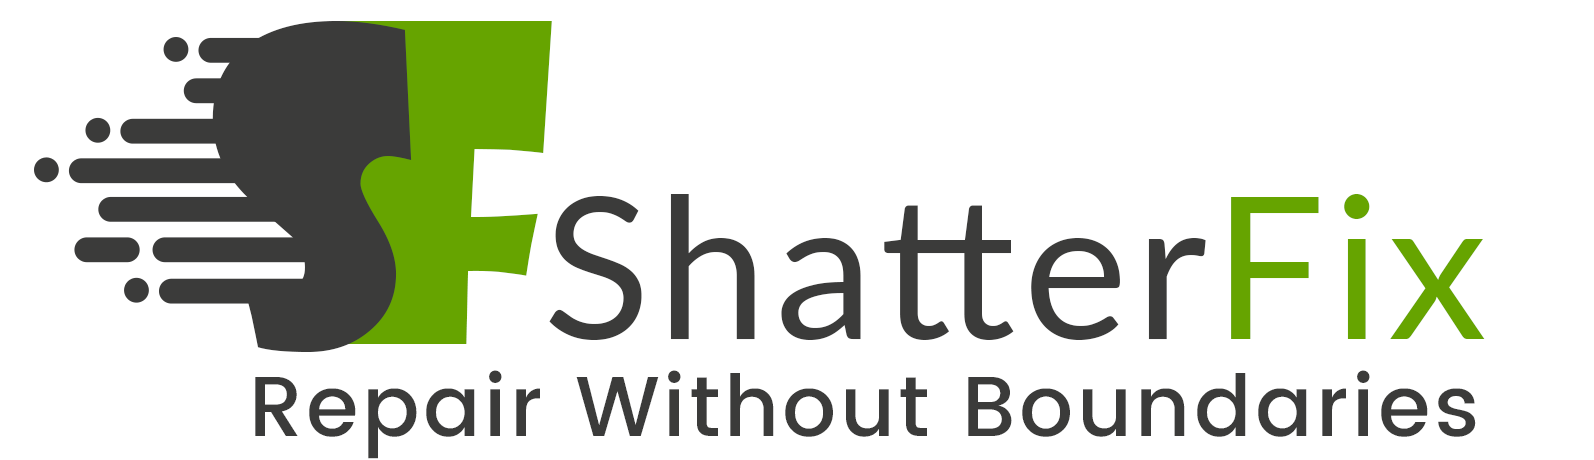 Shatterfix